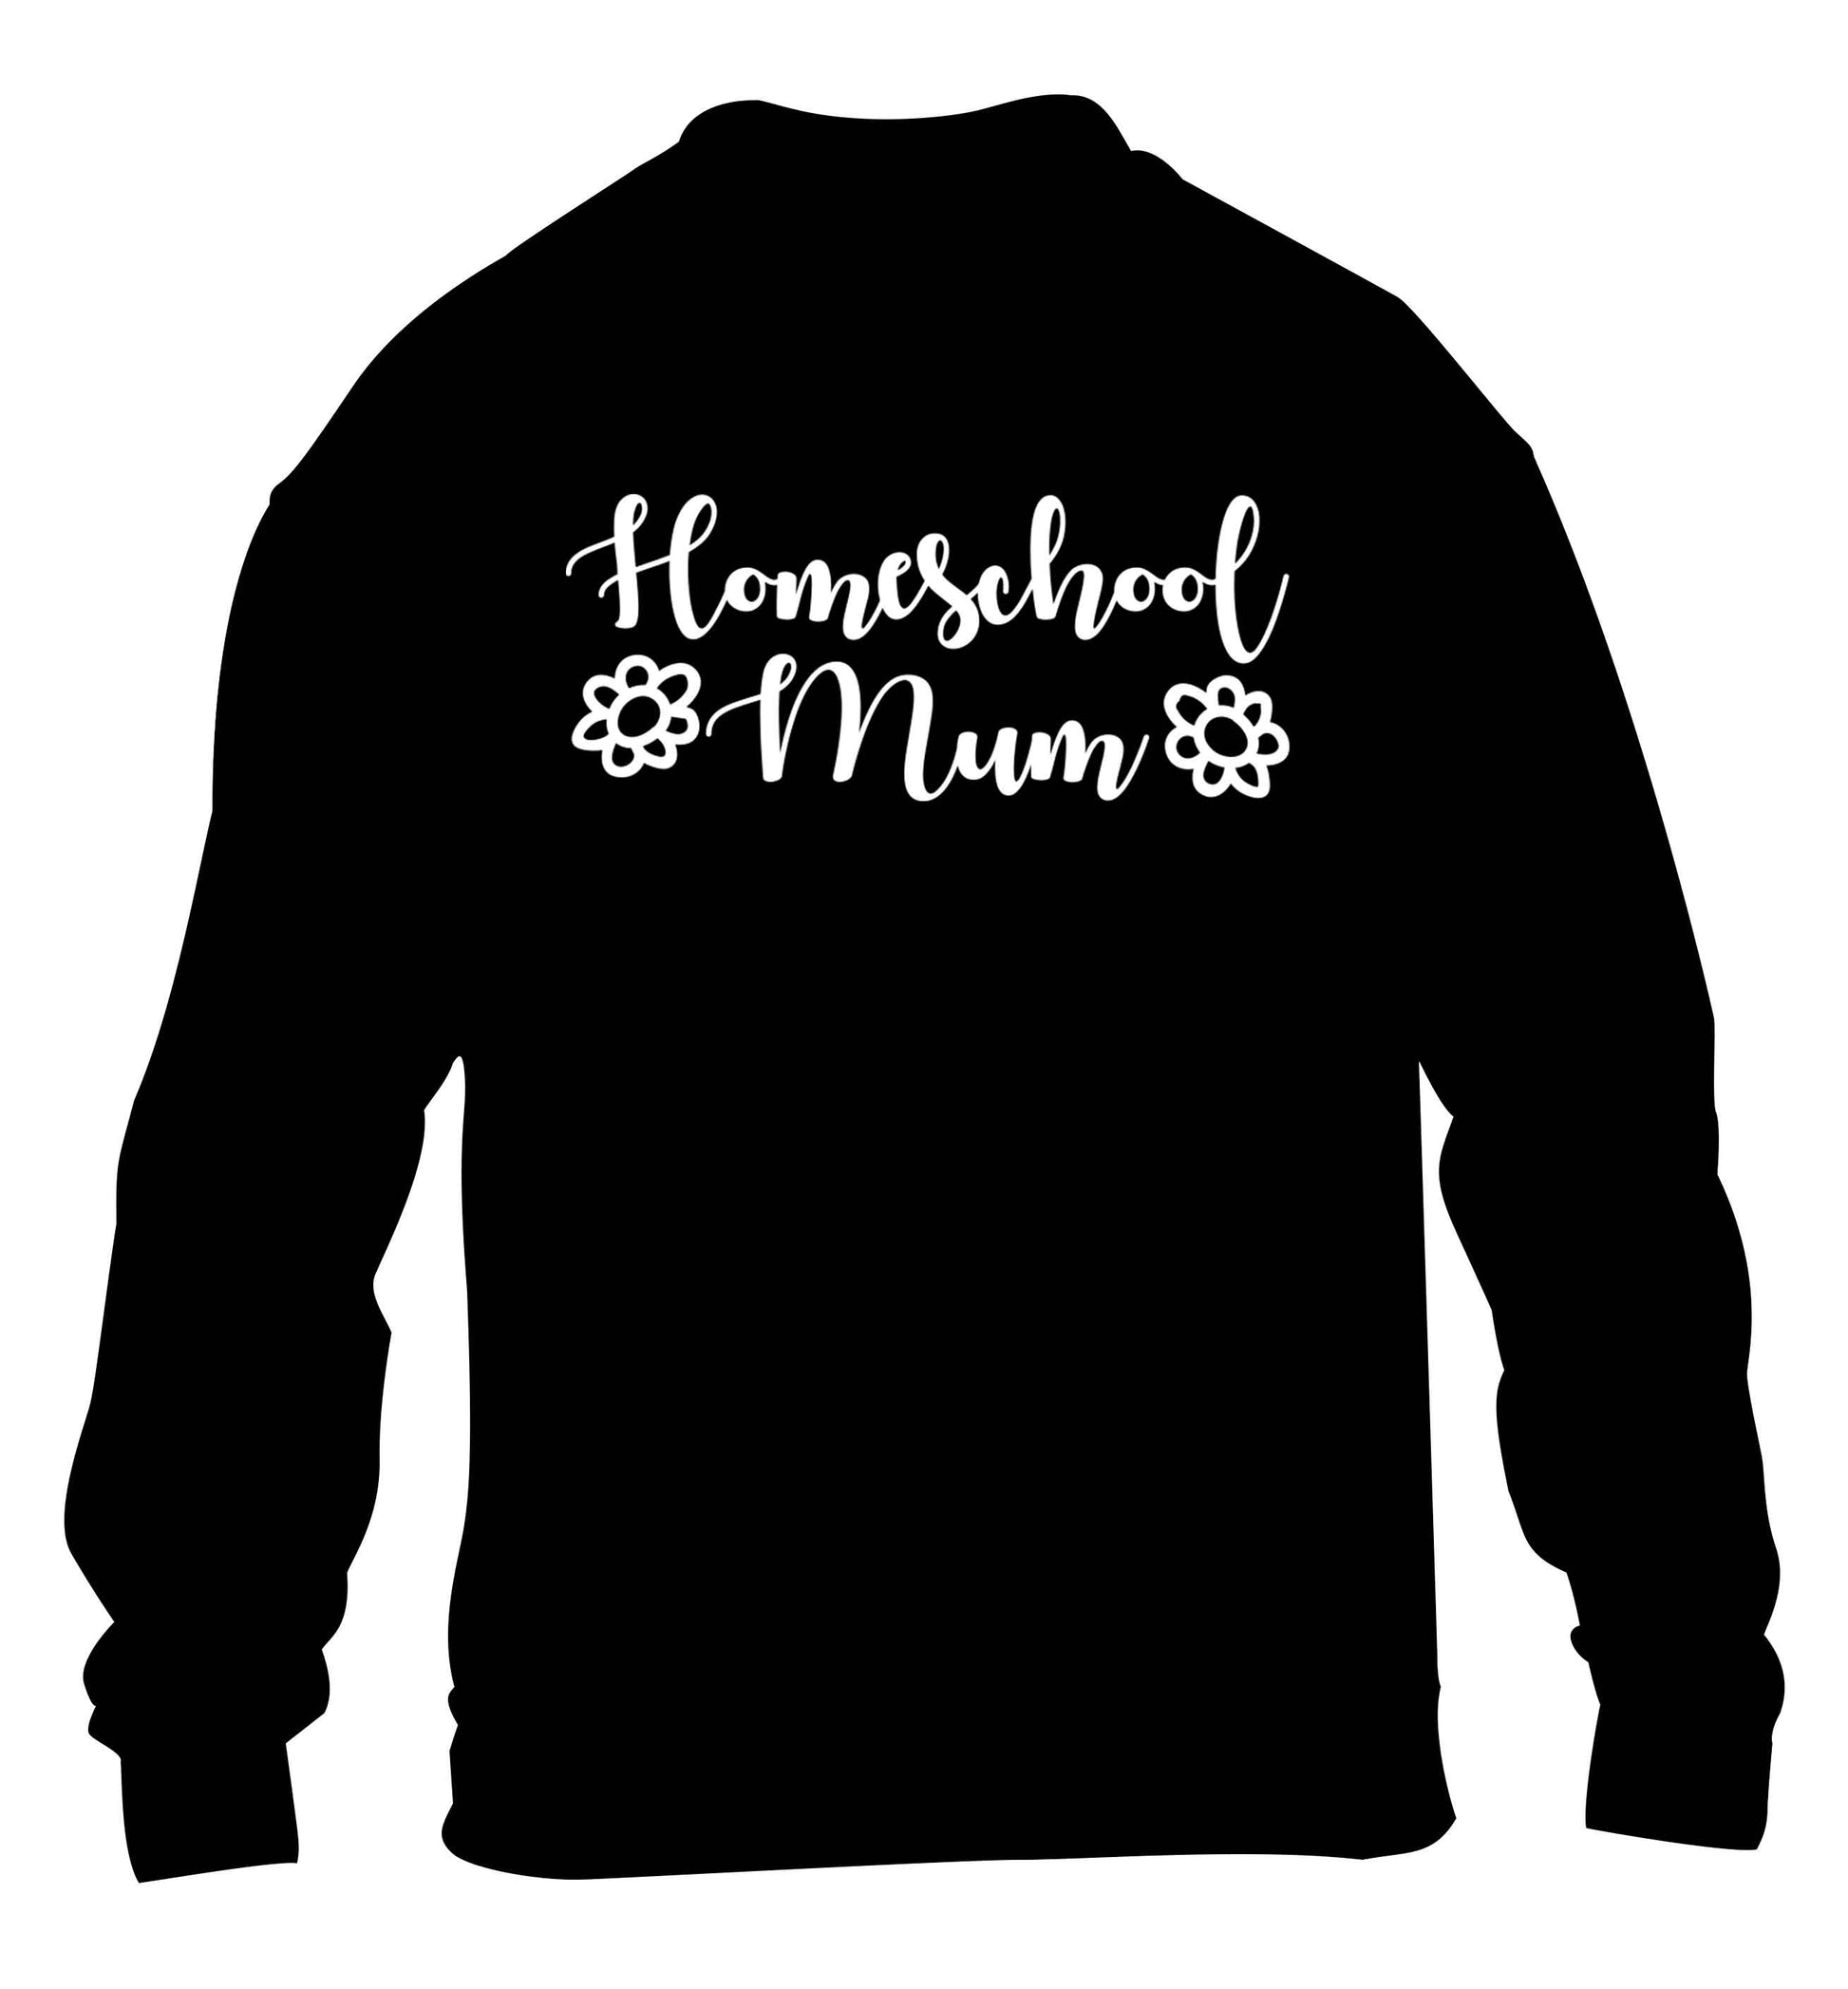 Homeschool mum children's black sweater 12-13 Years